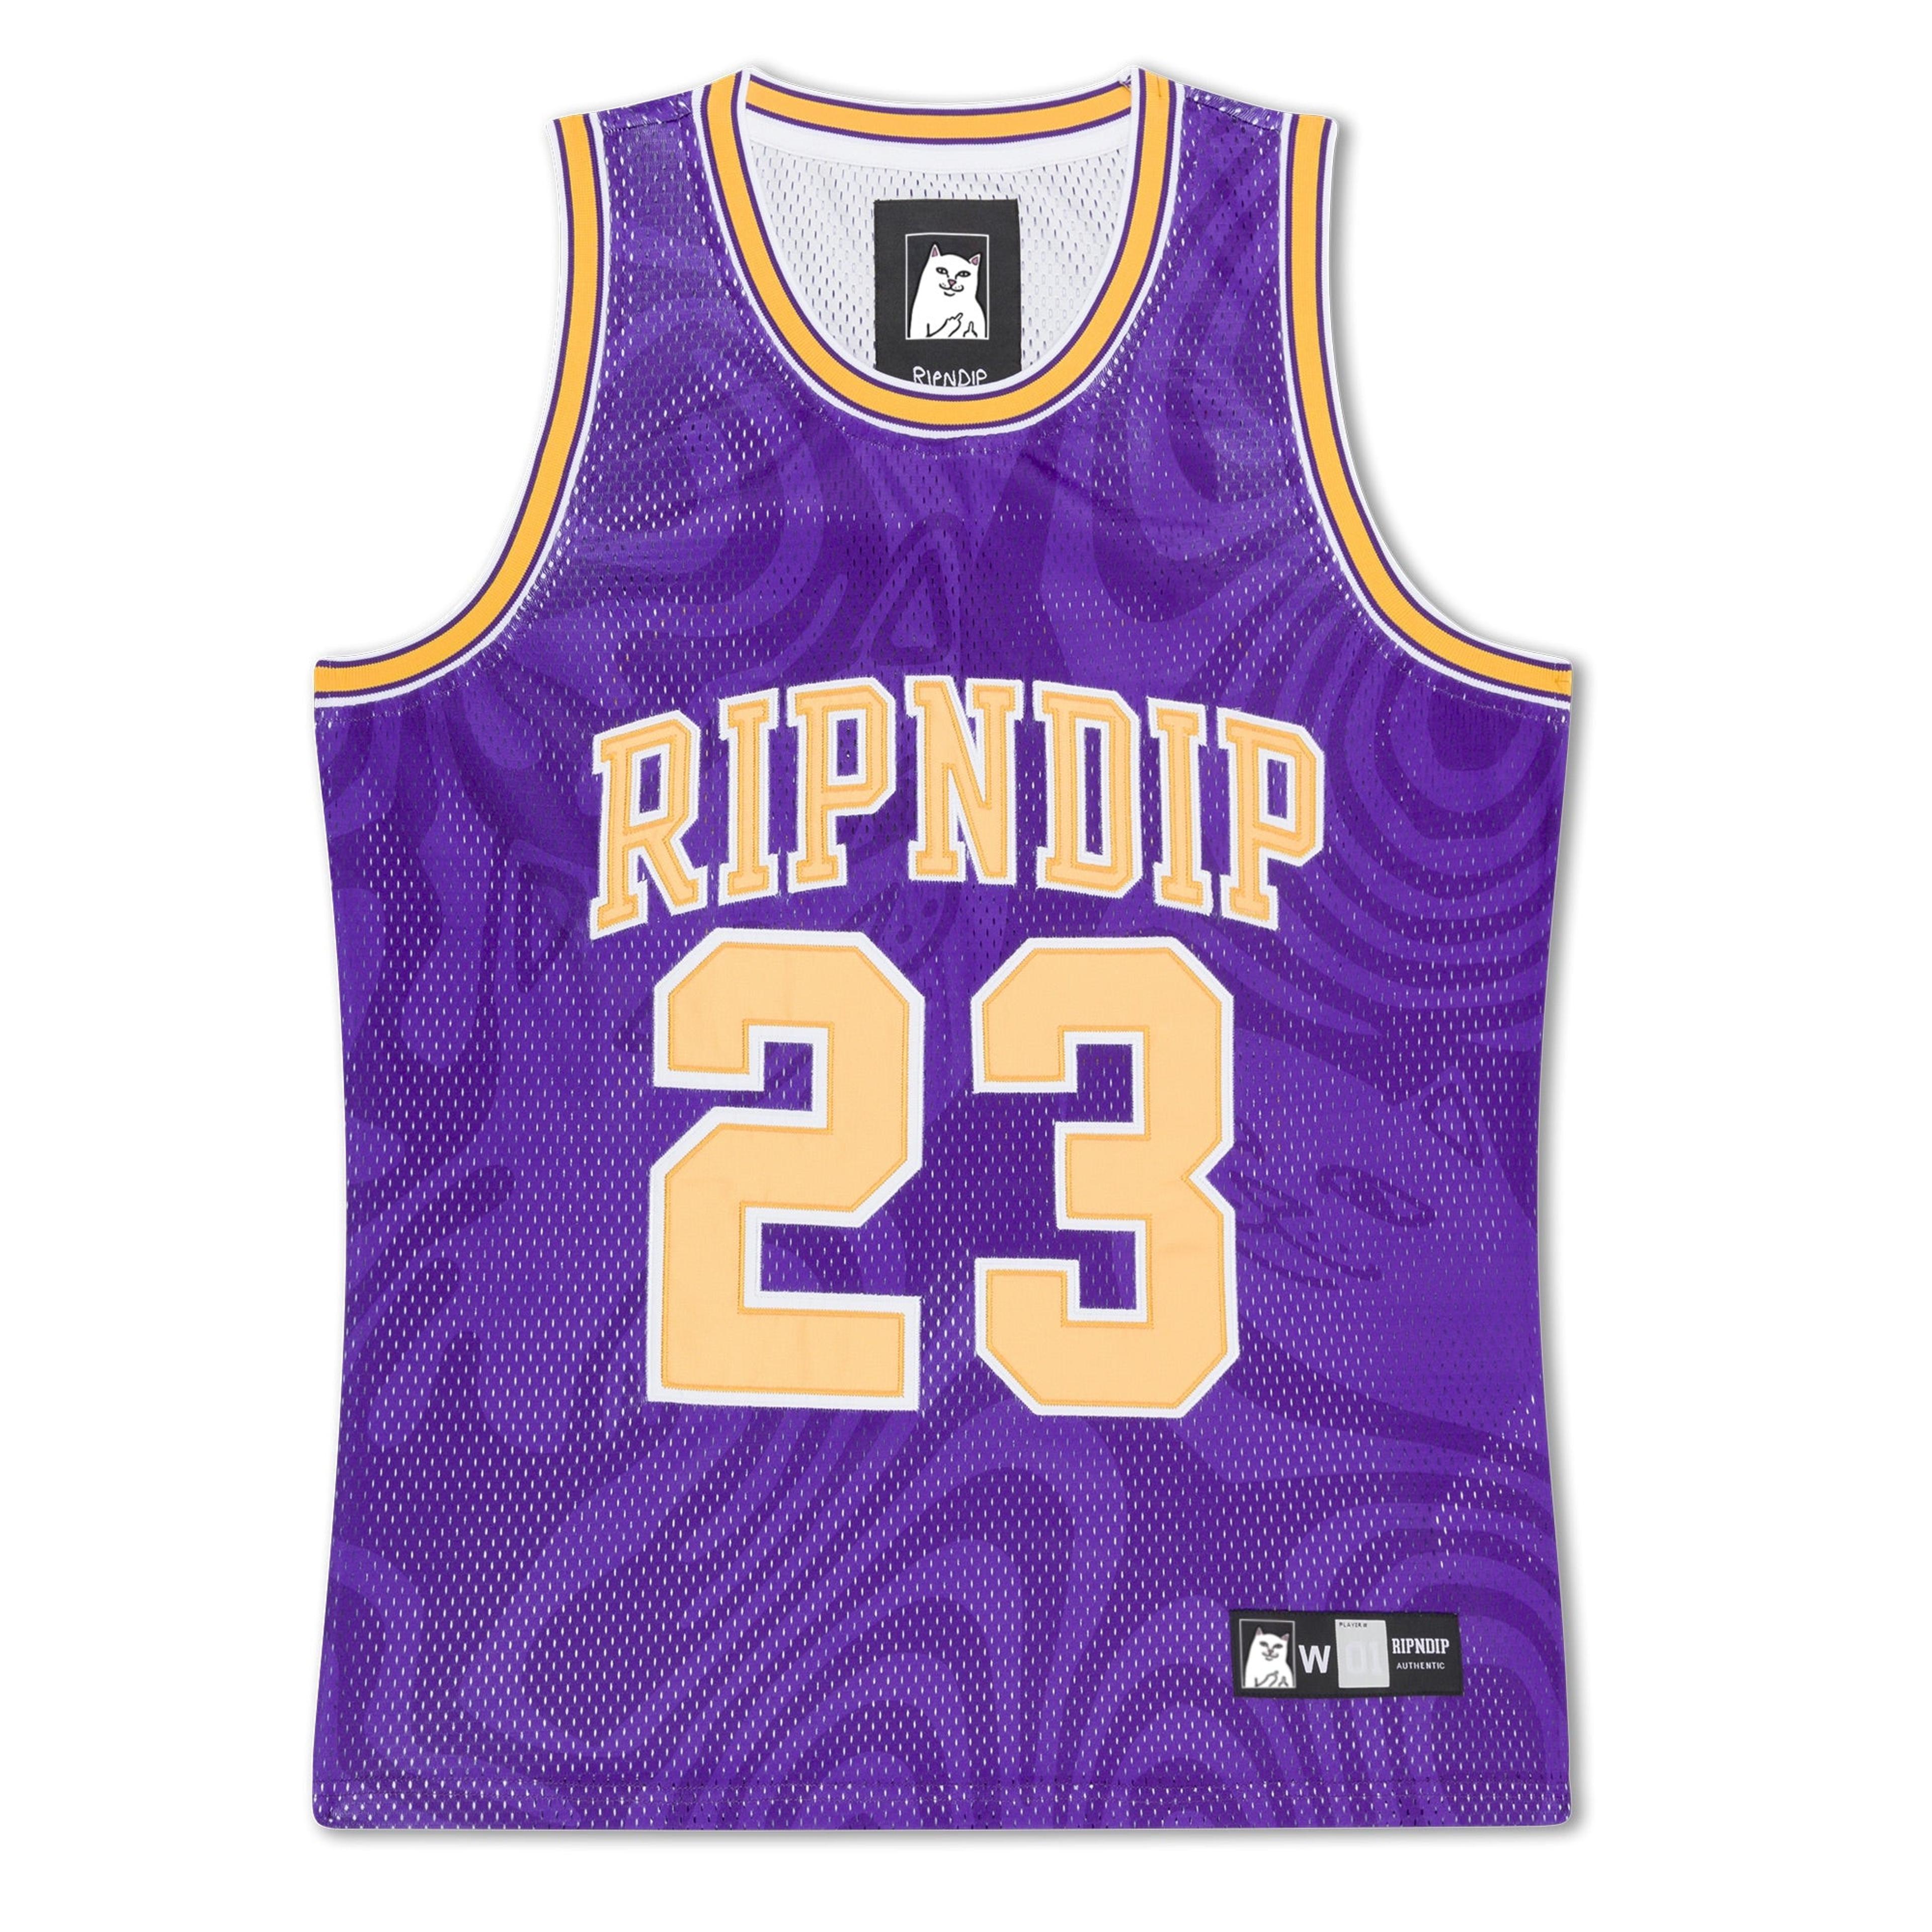 Ripndip LA Basketball Jersey (Purple)